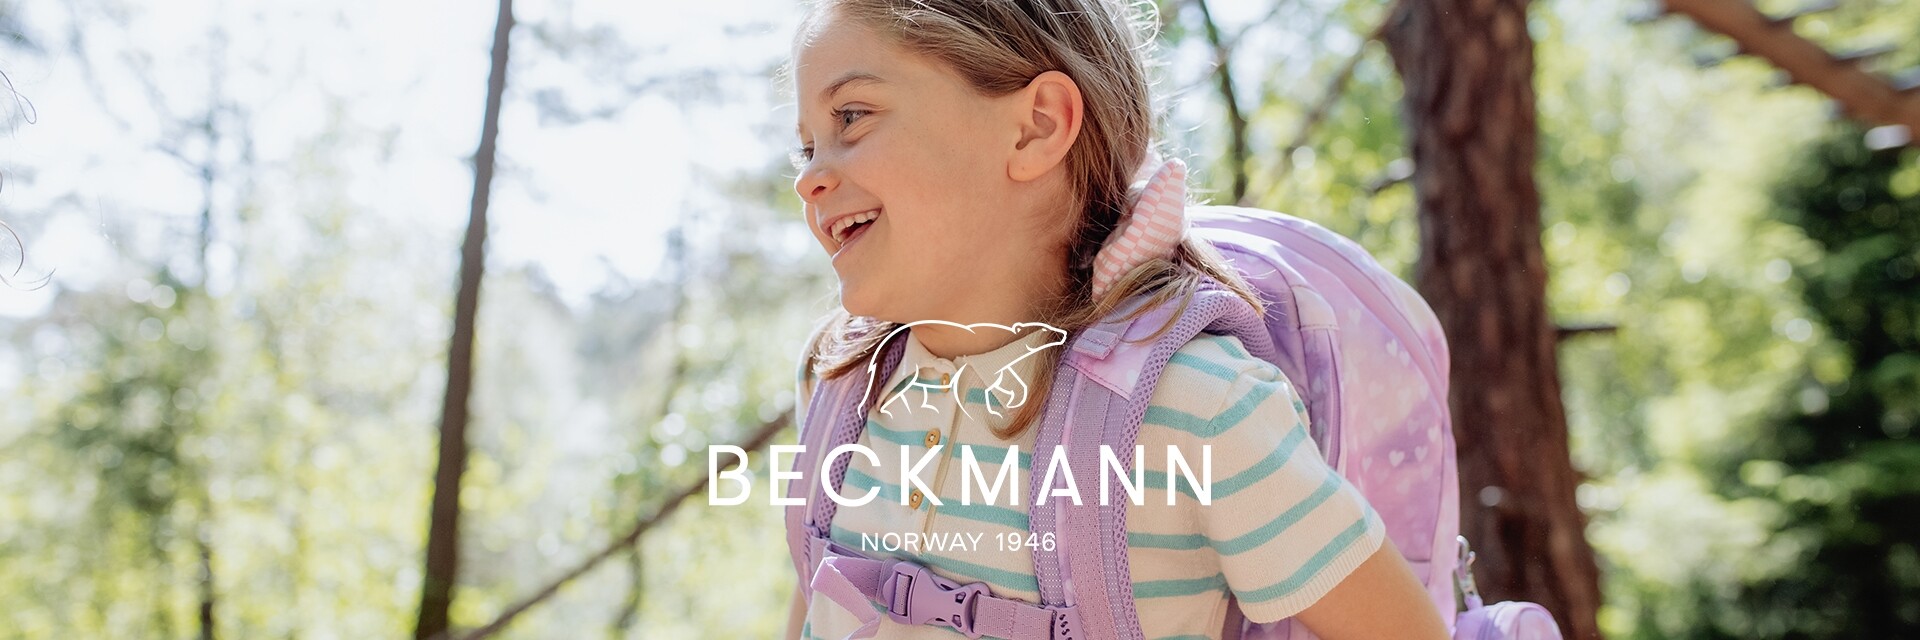 Beckmann Grundschule Motiv 4